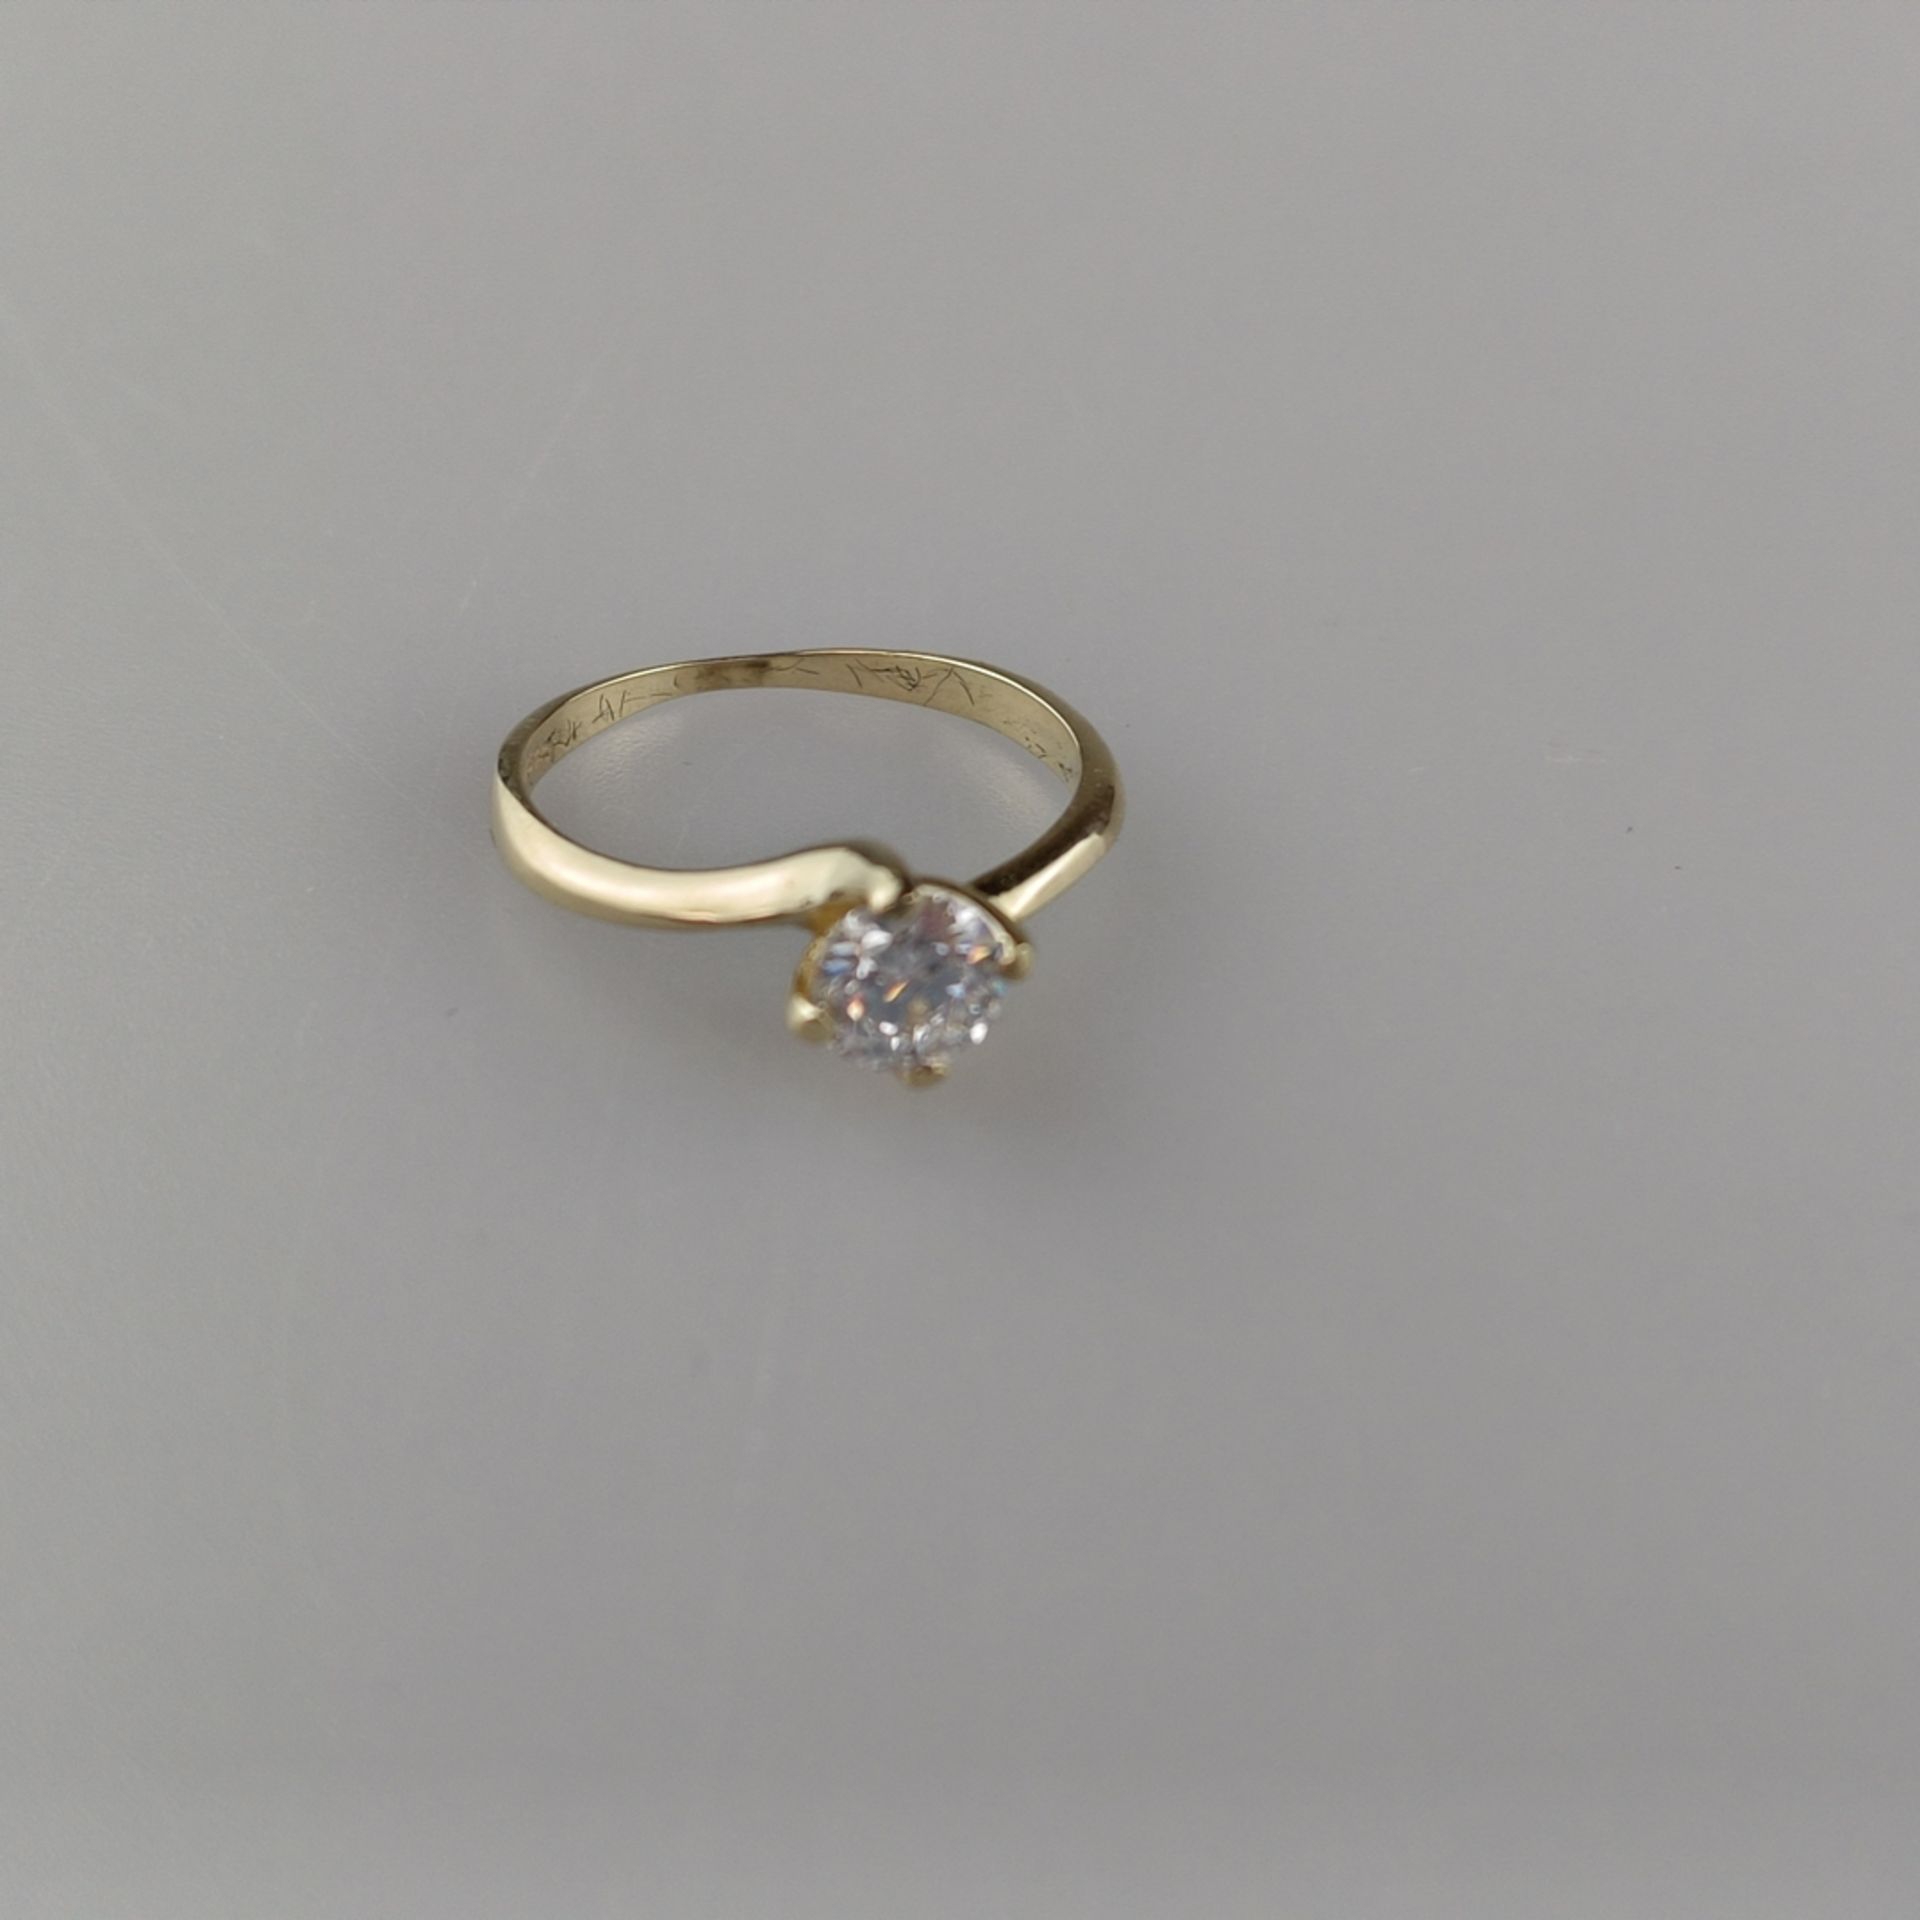 Diamantring - Gelbgold 585, gestempelt, besetzt mit 1 Diamanten von 0,6 ct. im Brilliantschliff, Fa